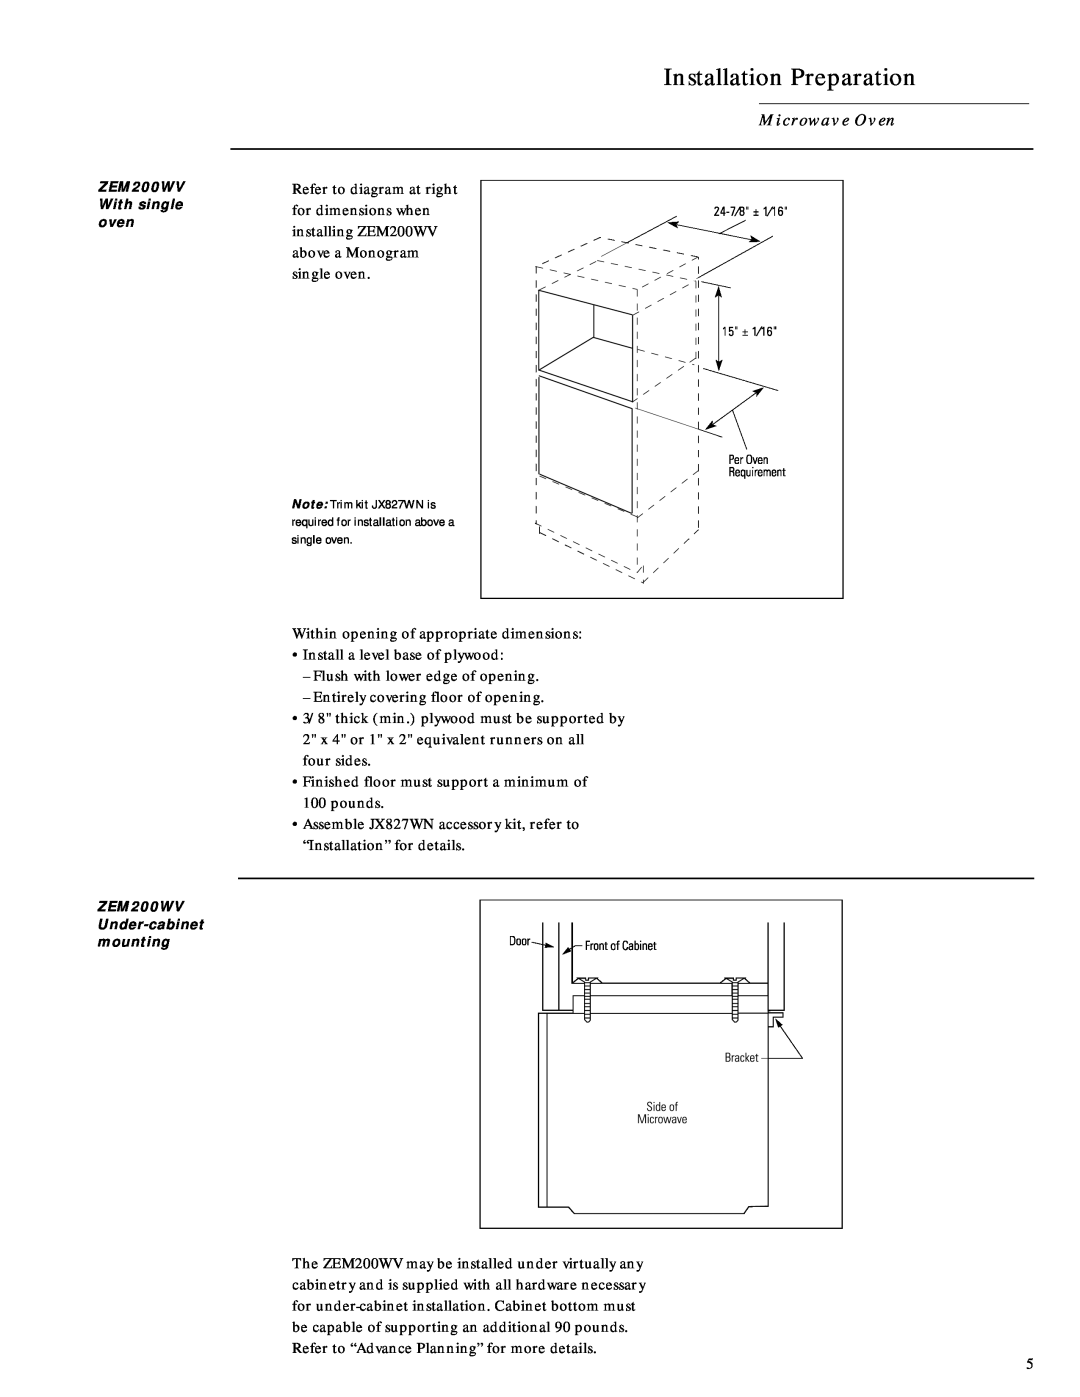 GE Monogram Micr owave Oven, Installation Preparation, ZEM200WV With single oven, ZEM200WV Under-cabinetmounting 